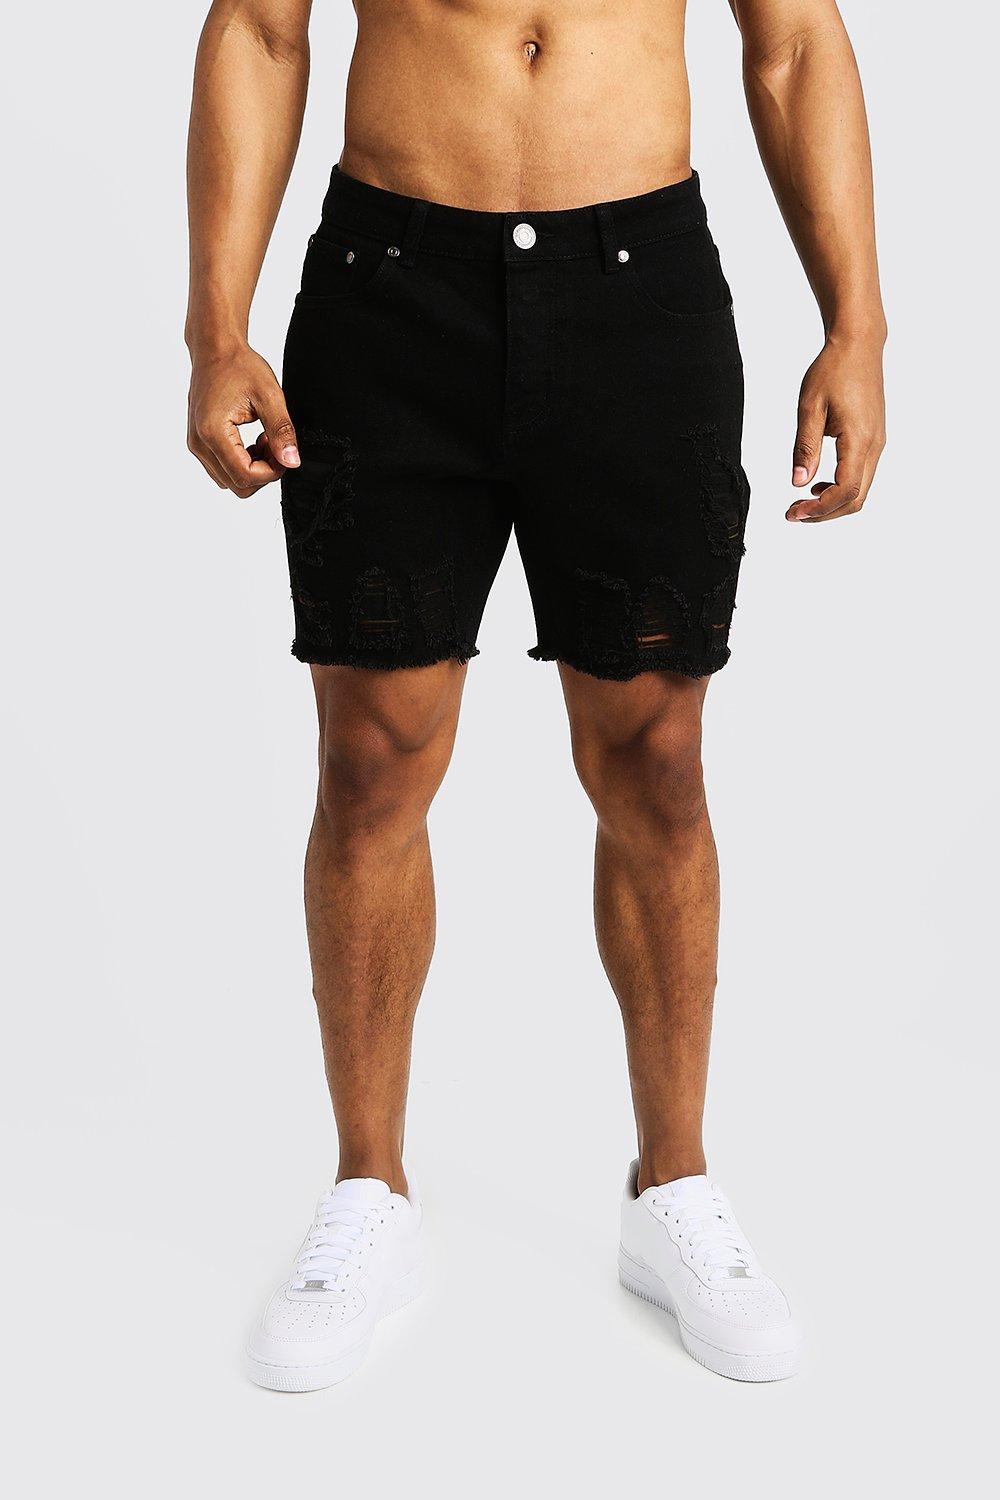 Mens shorts | Shop all shorts for men | boohoo